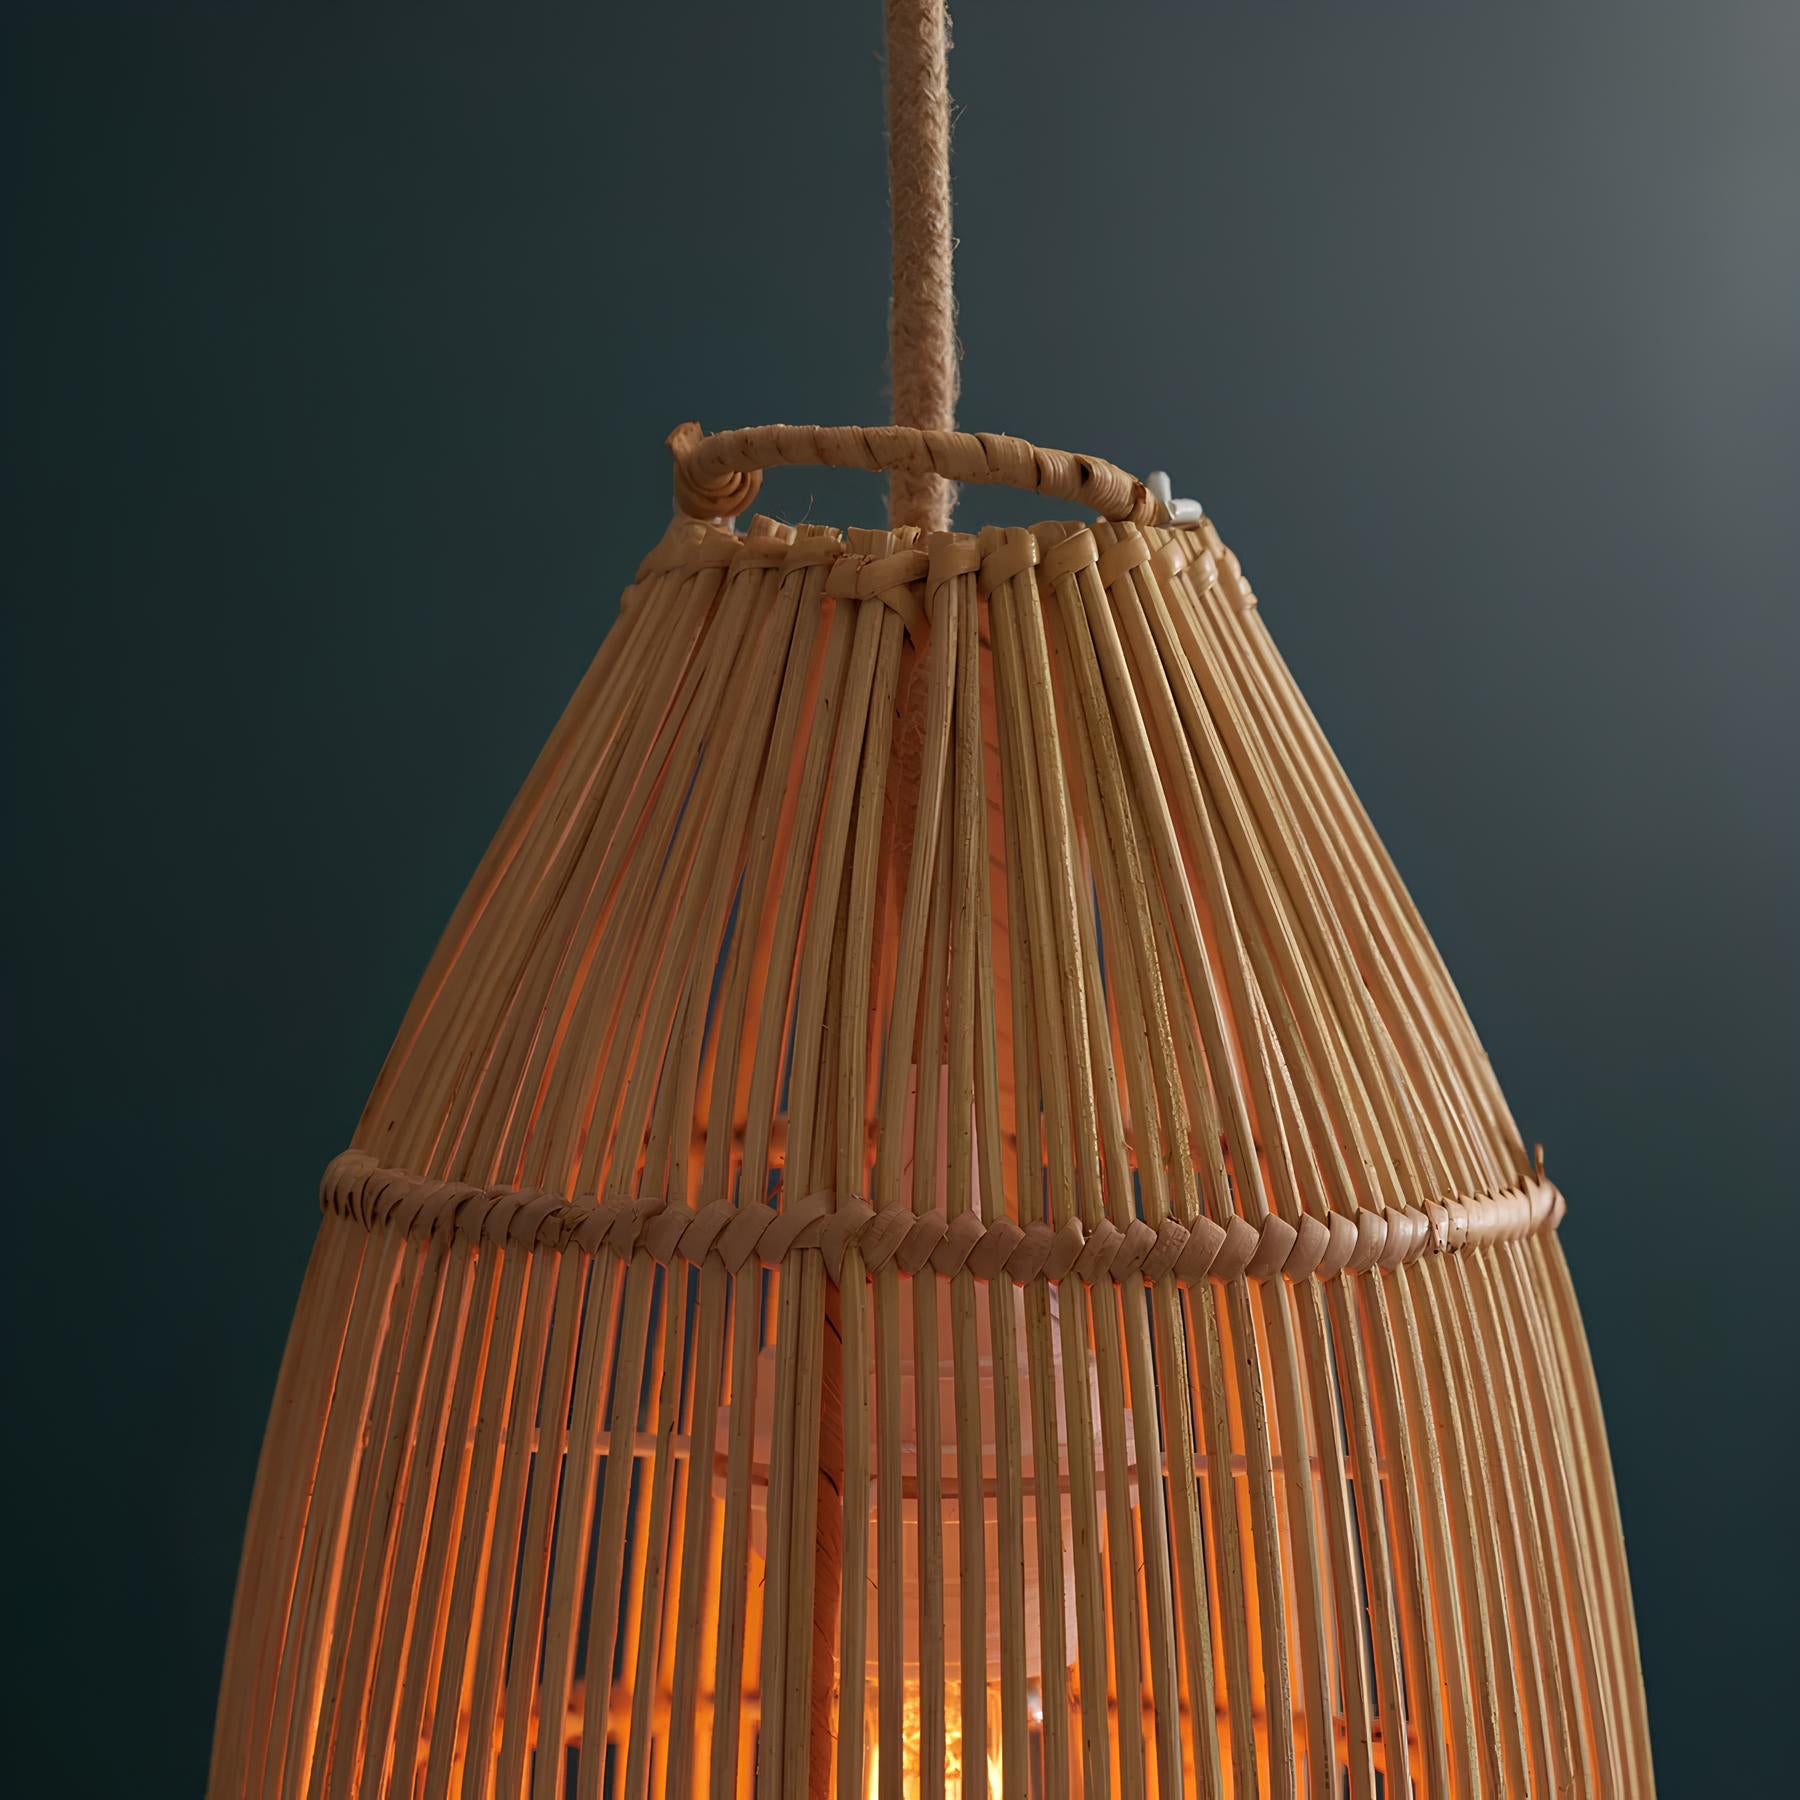 Bamboo Hanging lamp for Living Room | Rattan Pendant light | Cane ceiling light - Durga - Akway